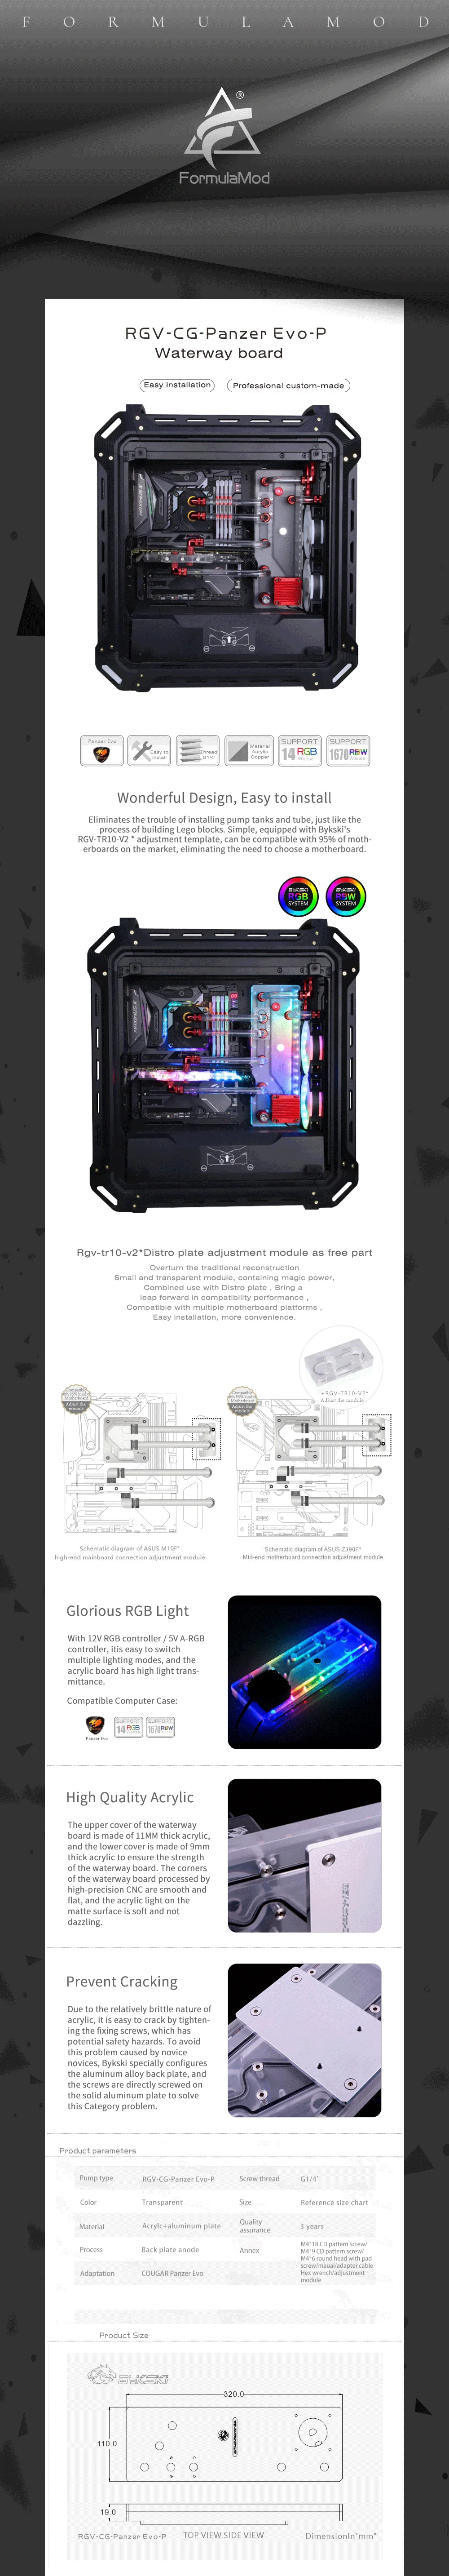 Bykski Waterway Cooling Kit For COUGAR Panzer Evo Case, 5V ARGB, For Single GPU Building, RGV-CG-Panzer Evo-P  